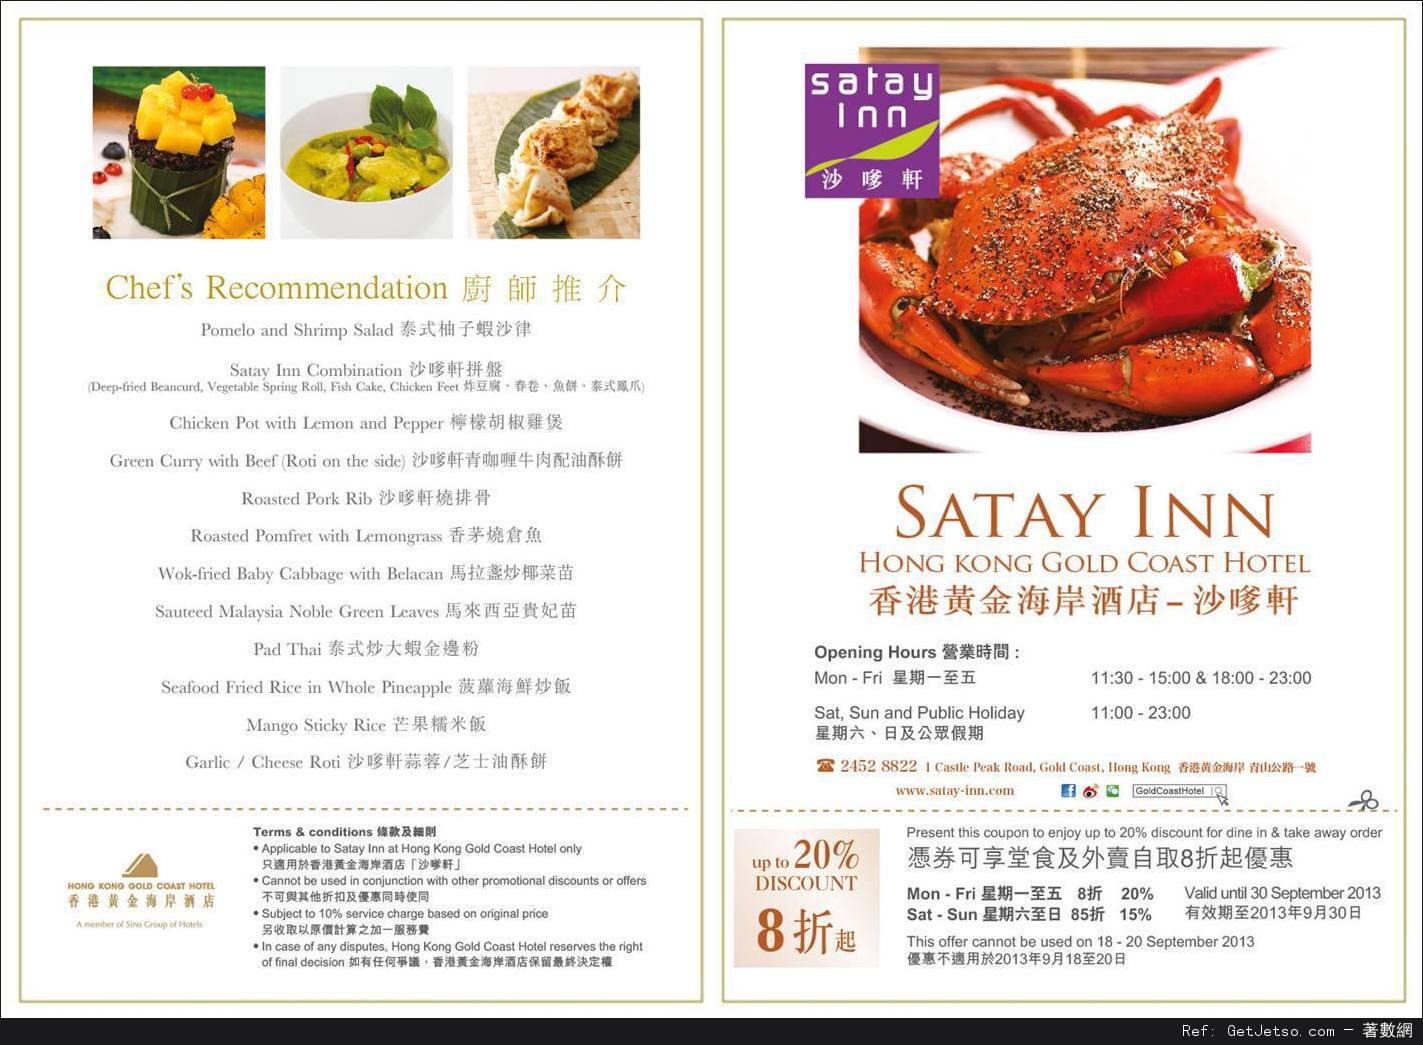 香港黃金海岸酒店9月份自助晚餐生日優惠券(至13年9月30日)圖片3